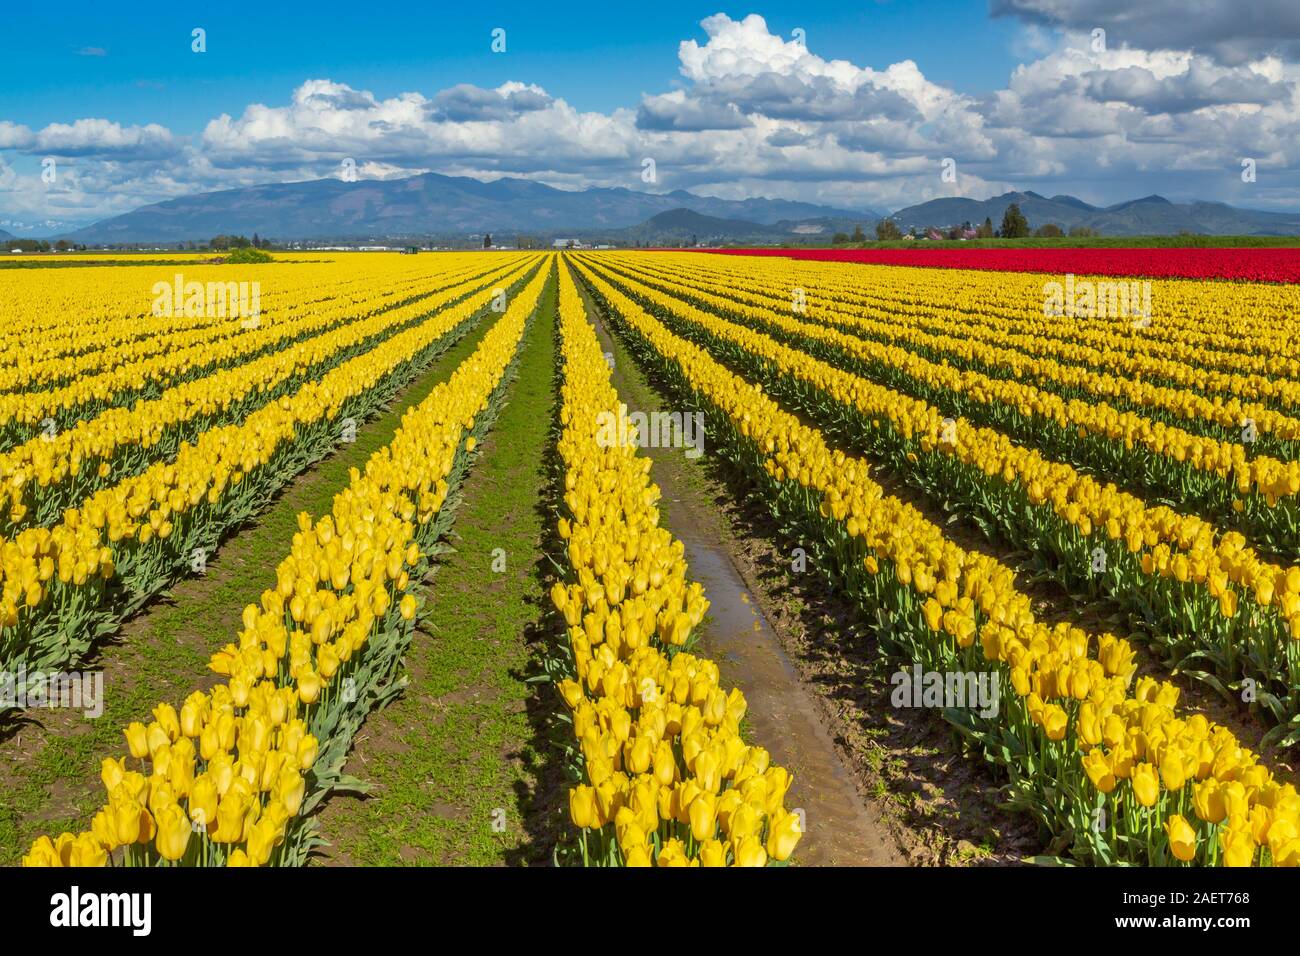 Blooming tulip fields in Skagit Valley, near Mount Vernon, Washington, USA. Stock Photo